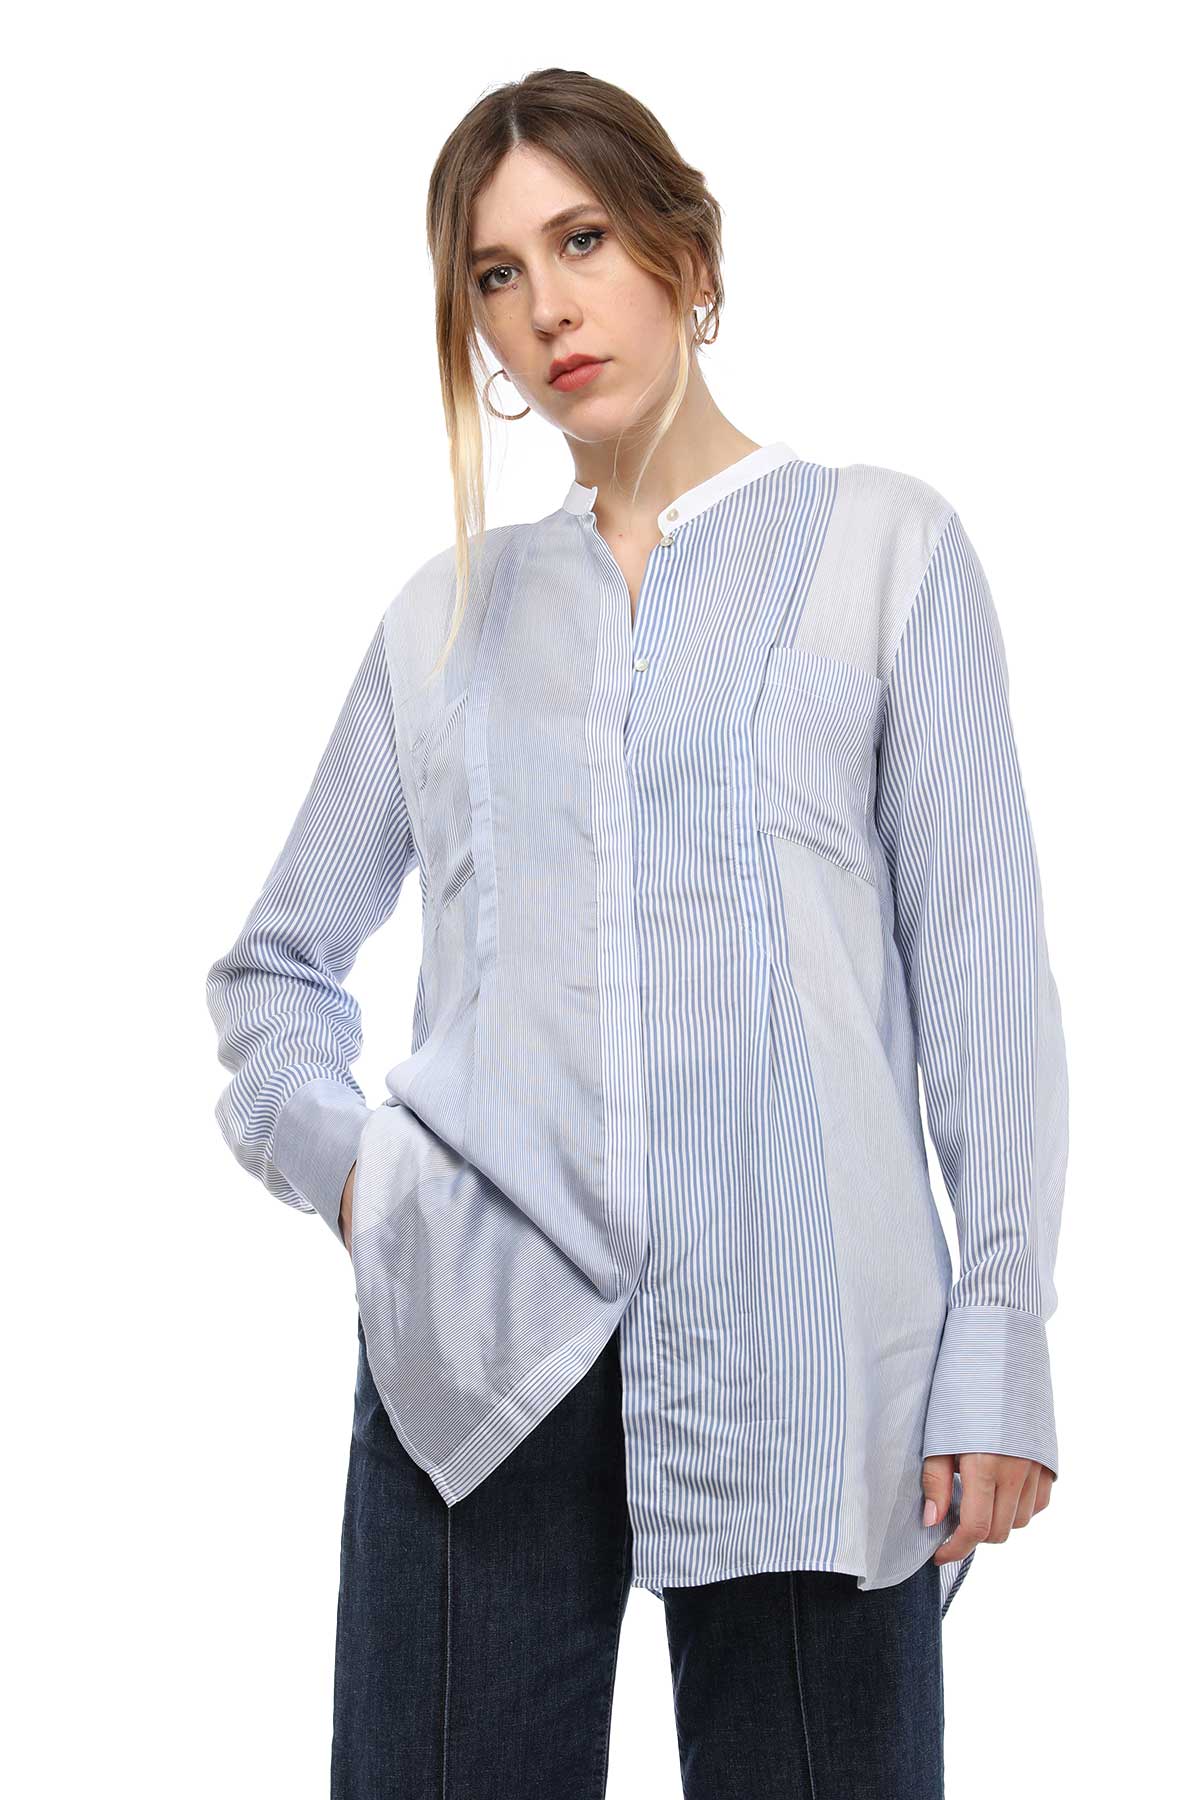 Tonet Uzun Gömlek-Libas Trendy Fashion Store